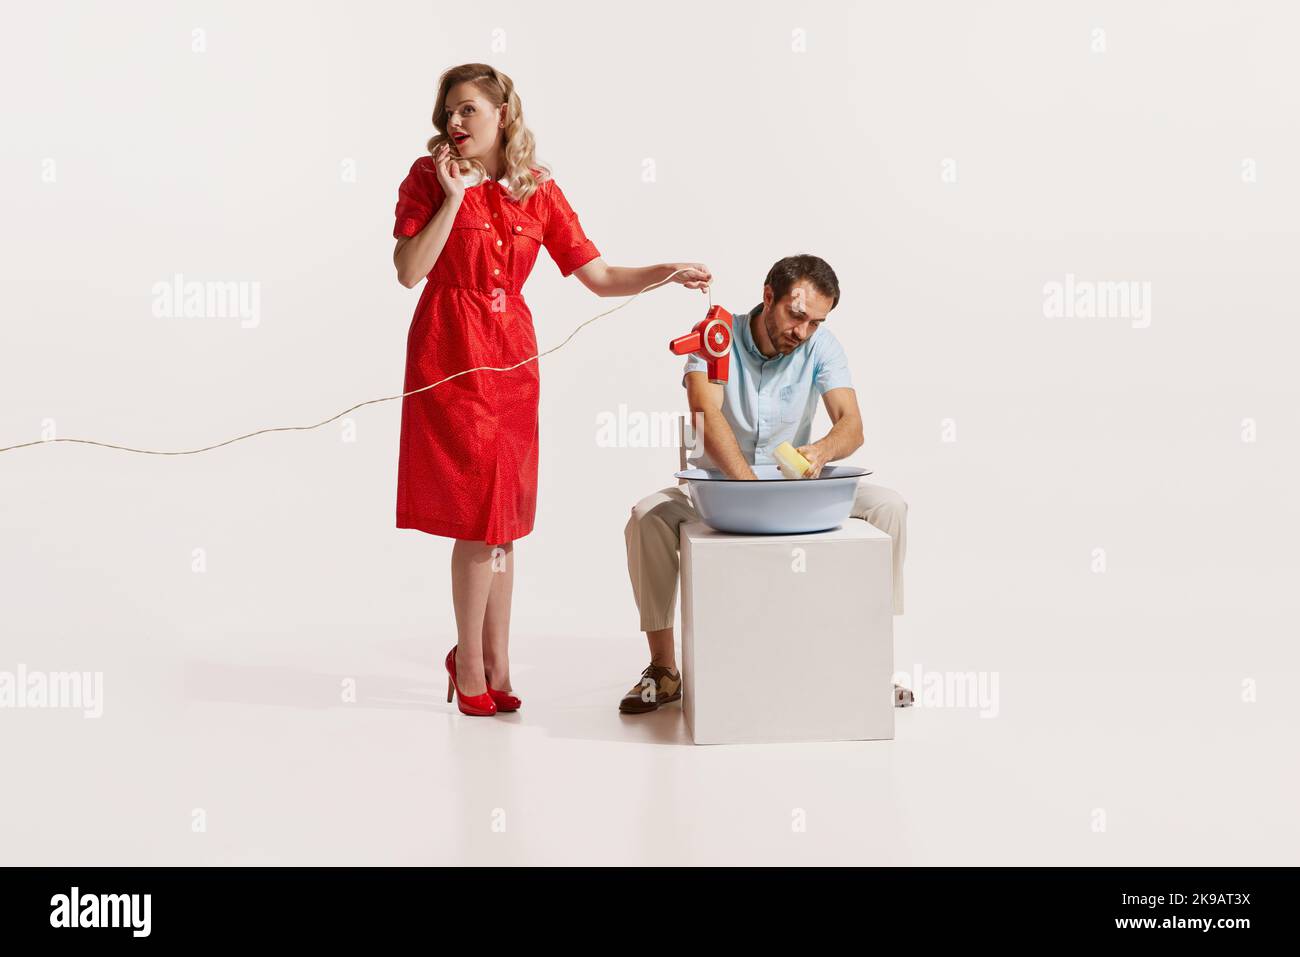 Portrait de l'homme lavant la vaisselle pendant que la femme parle au téléphone et tenant le sèche-cheveux sur l'eau isolée sur fond blanc Banque D'Images